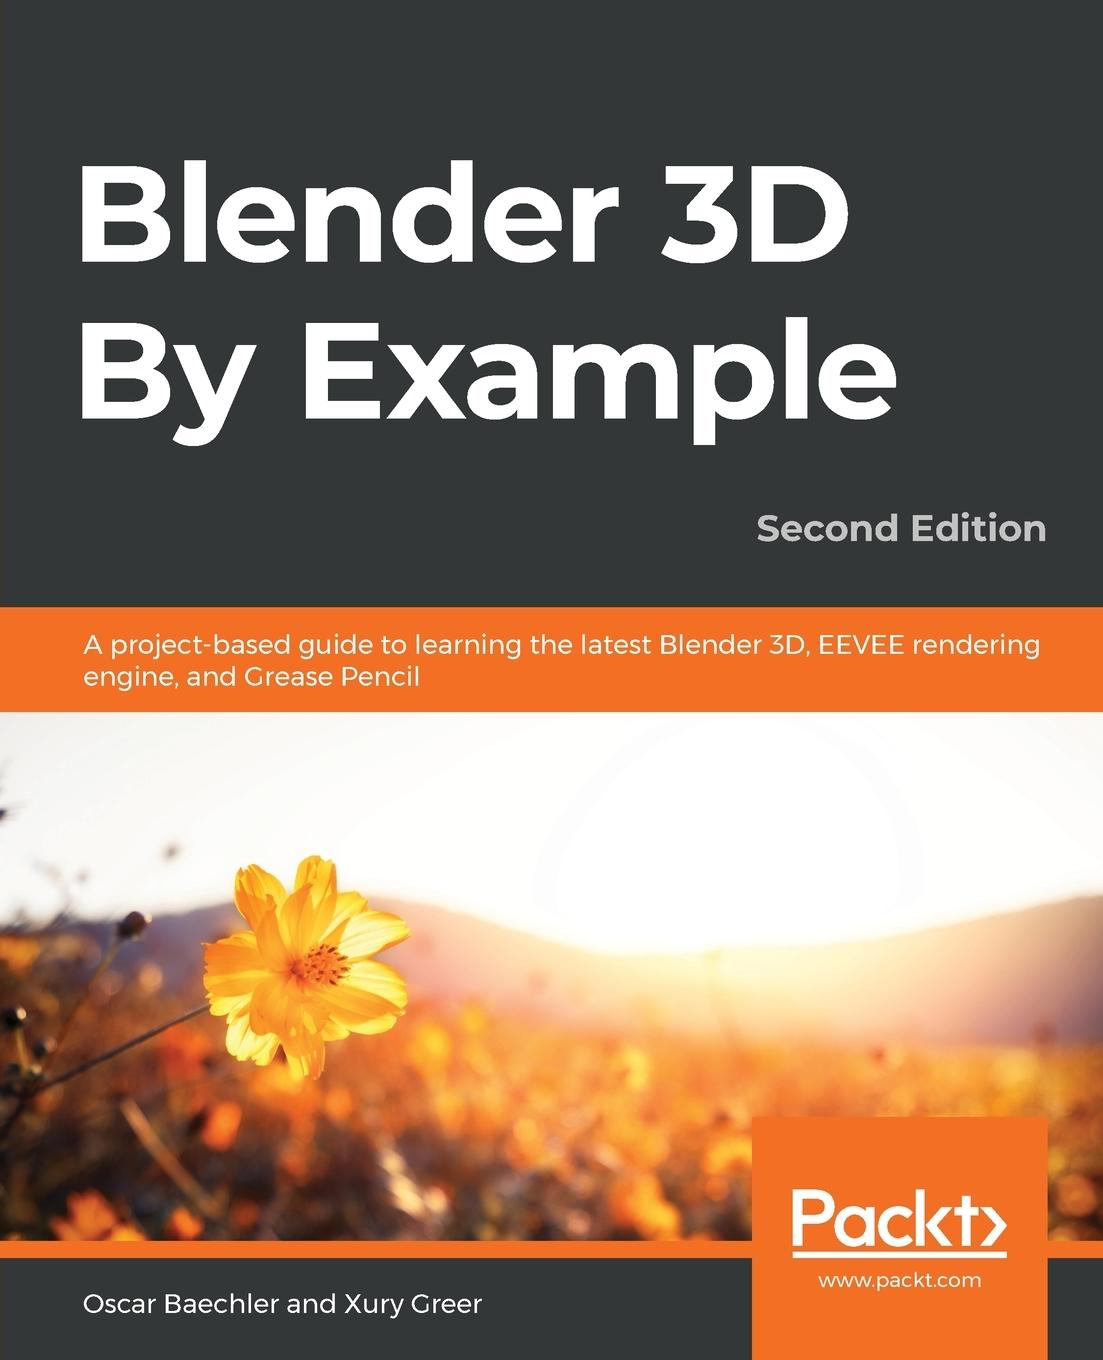 Book Blender 3D By Example Xury Greer